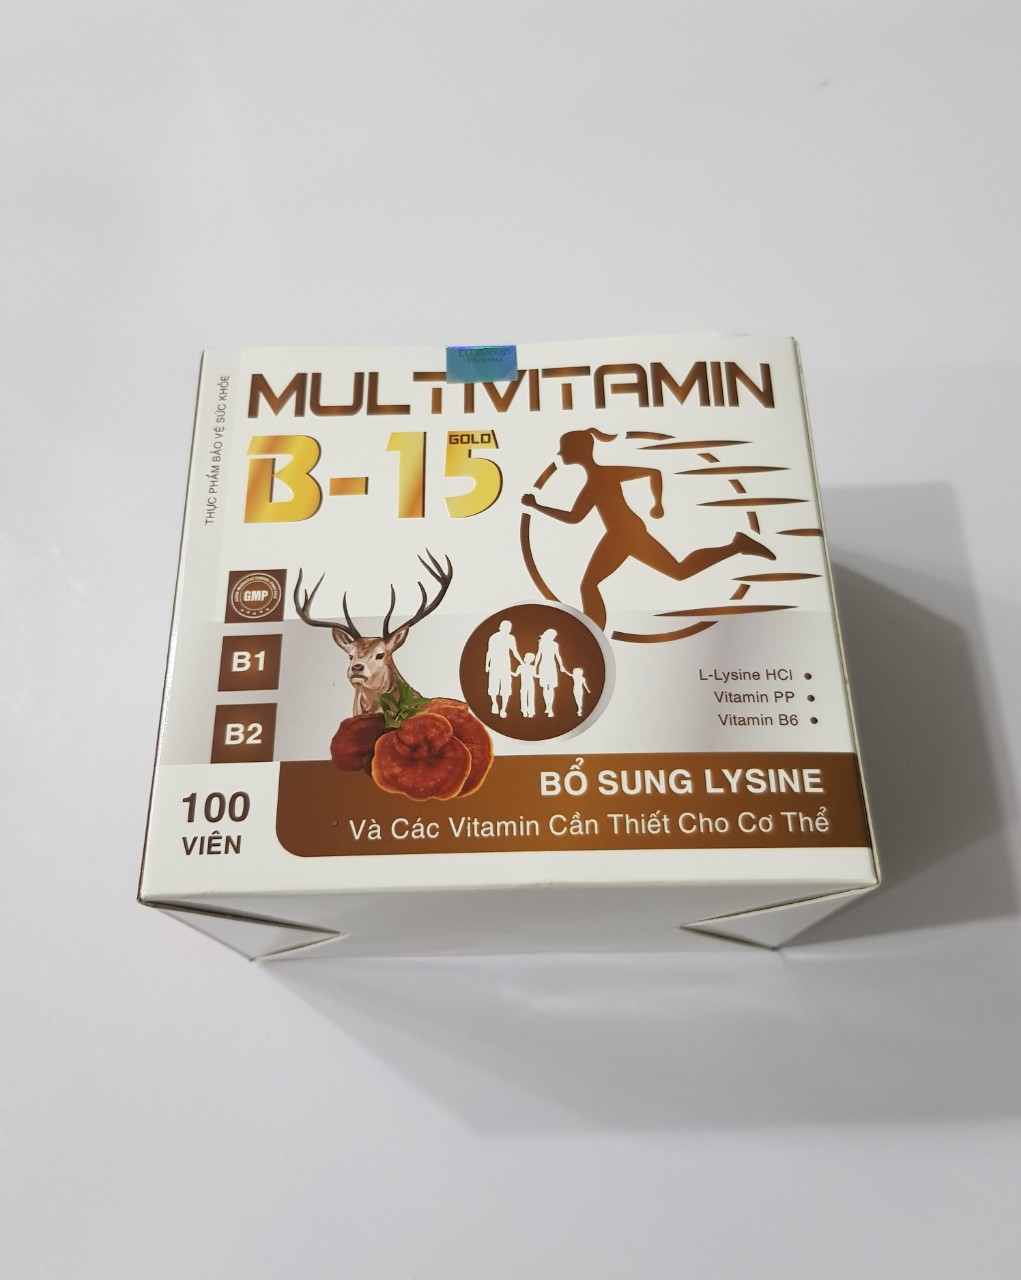 Viên Multivitamin B-15 bổ sung lysine và các vitamin cần thiết cho cơ thể.